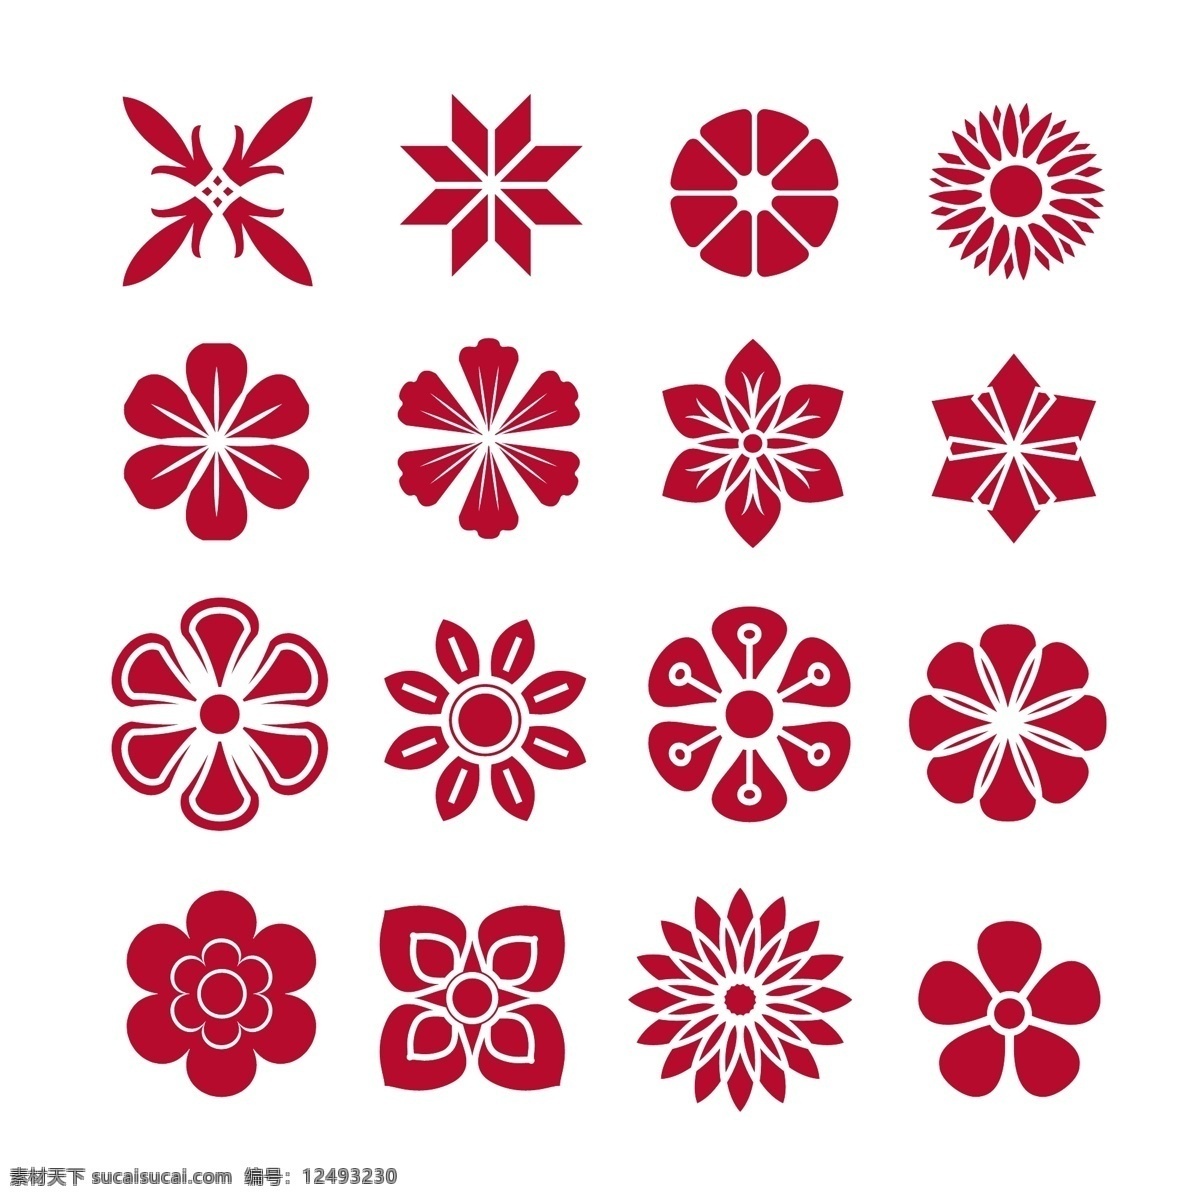 红花图标收藏 花 抽象 图标 红色 形状 符号 图标集 包装 集合 抽象图形 图标包 白色